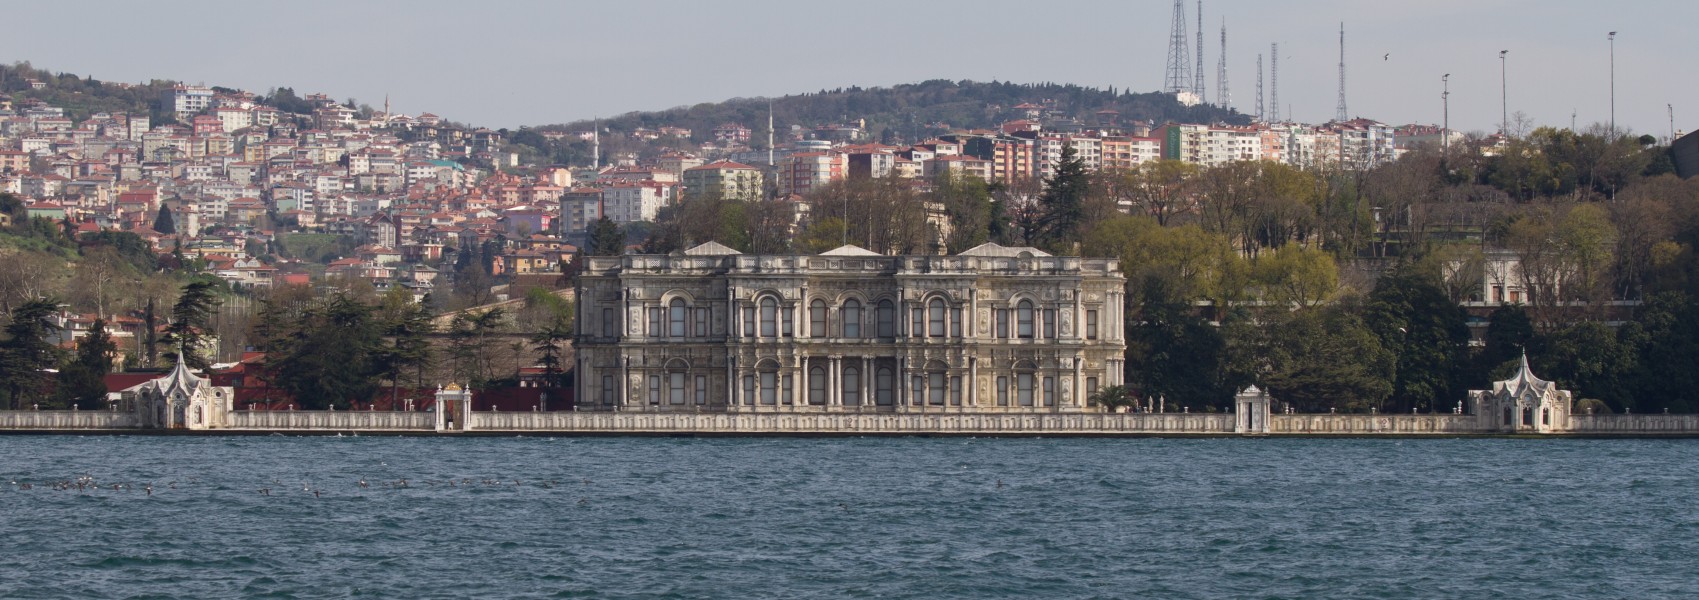 Beylerbeyi Palace - wide